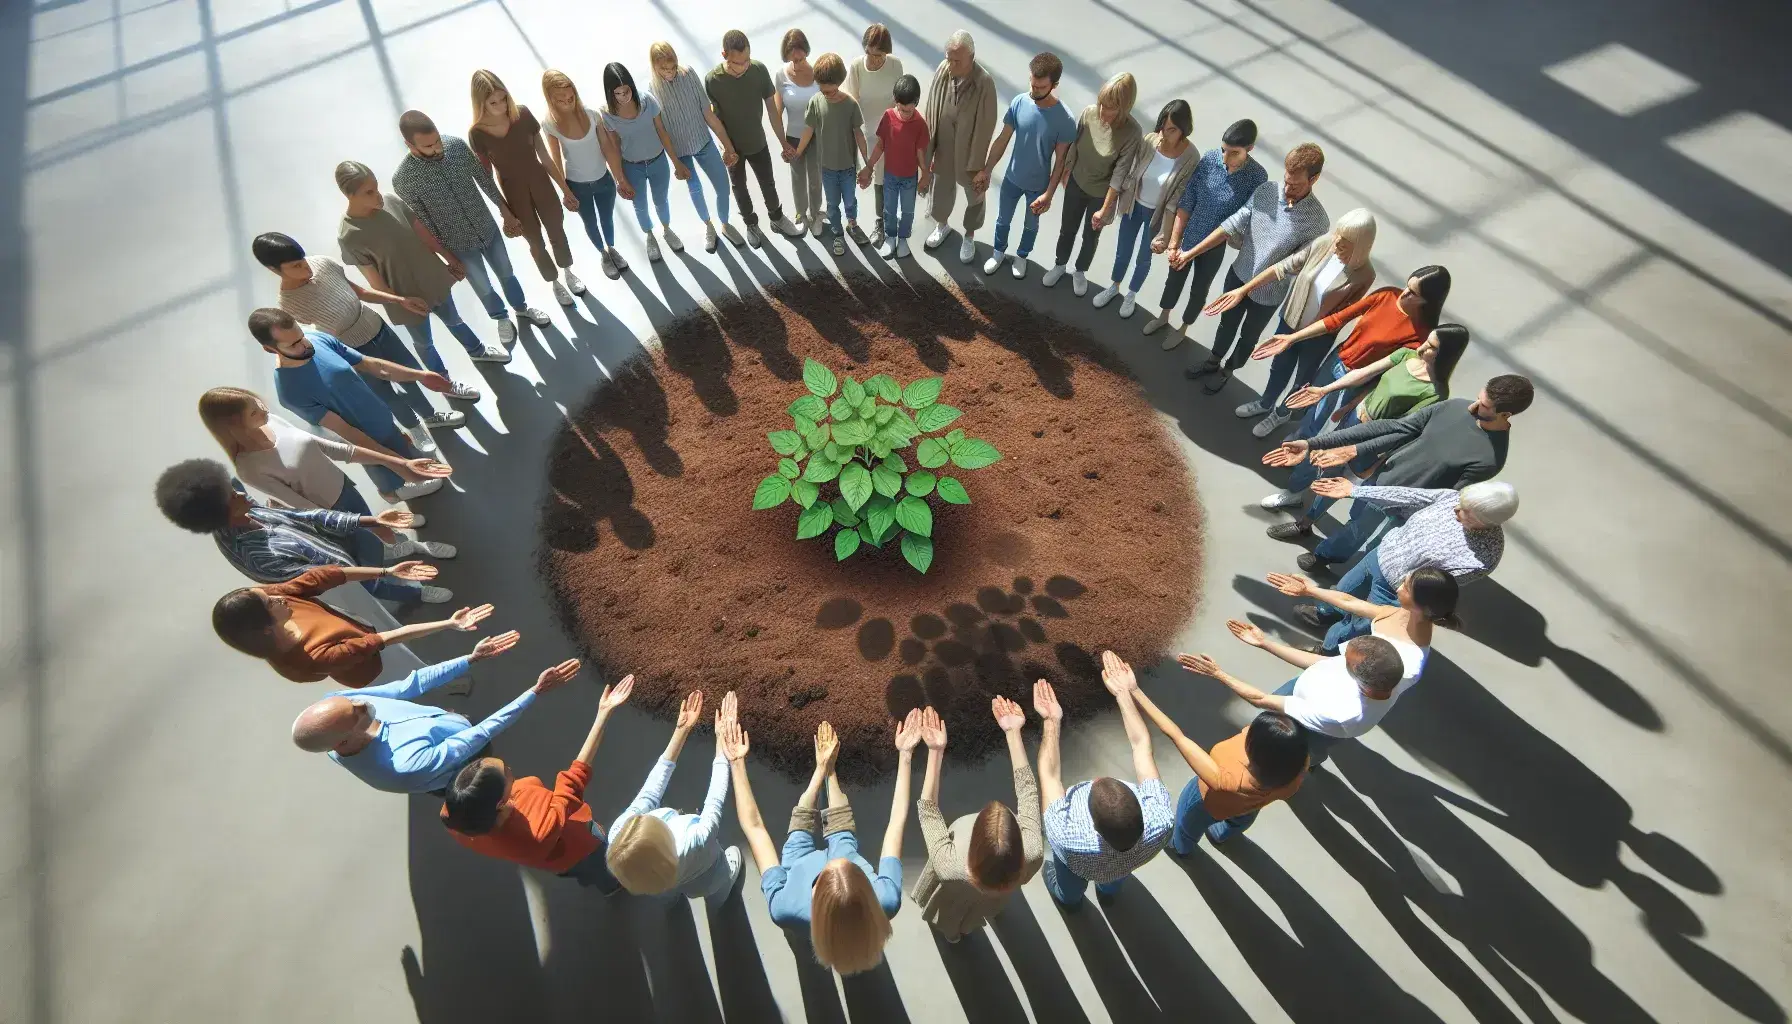 Grupo diverso de personas unidas cuidando una planta joven en un espacio abierto iluminado por luz natural, simbolizando colaboración y crecimiento.